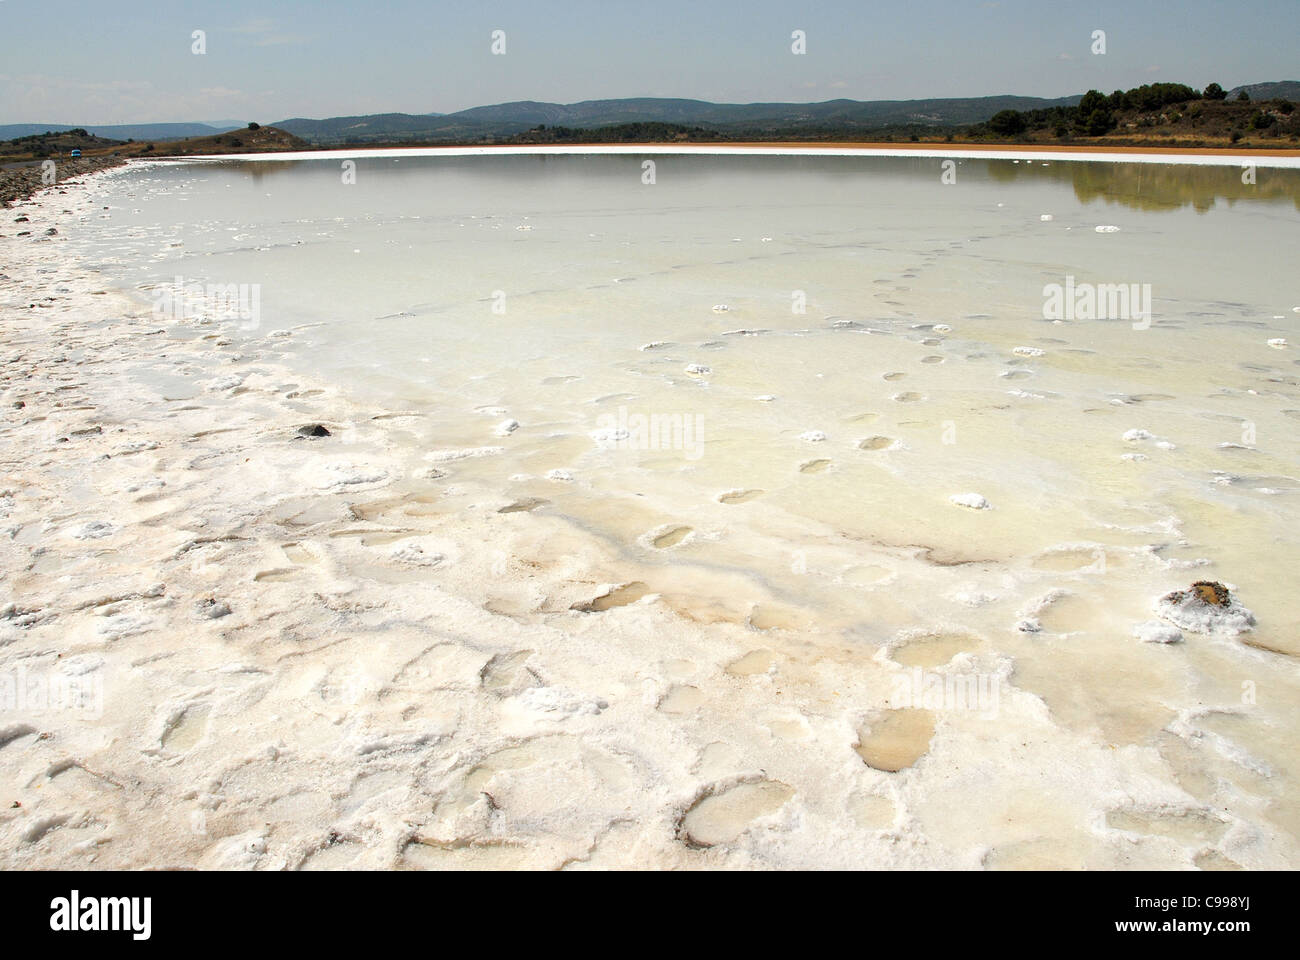 Salt lake in the Parc naturel régional de la Narbonnaise en Méditerranée in Aude, Pays Cathare, Roussillon, France Stock Photo